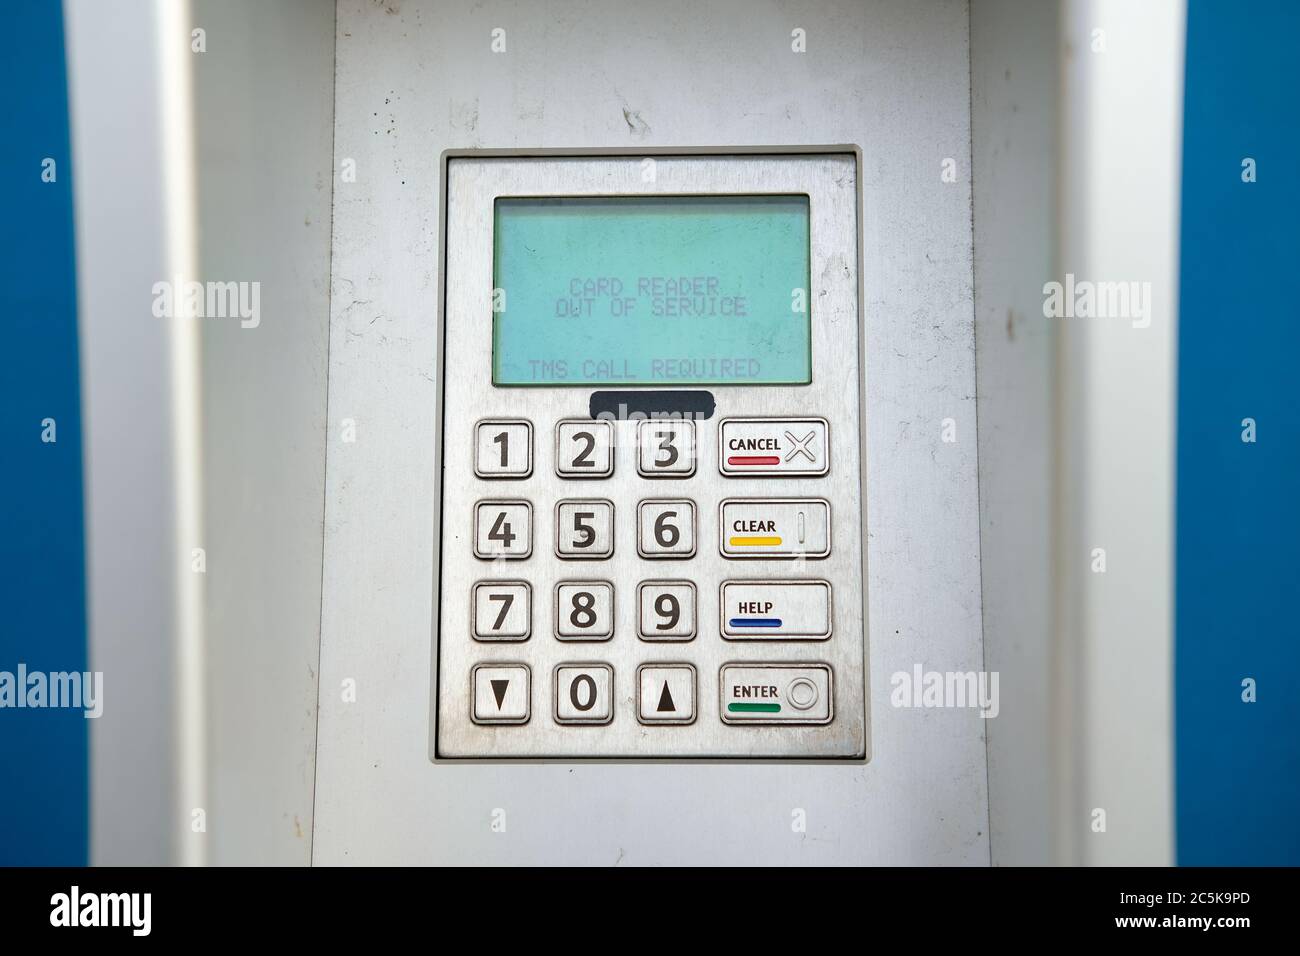 Hors commande distributeur automatique de billets affichant un écran LCD  indiquant que le distributeur est hors service Photo Stock - Alamy